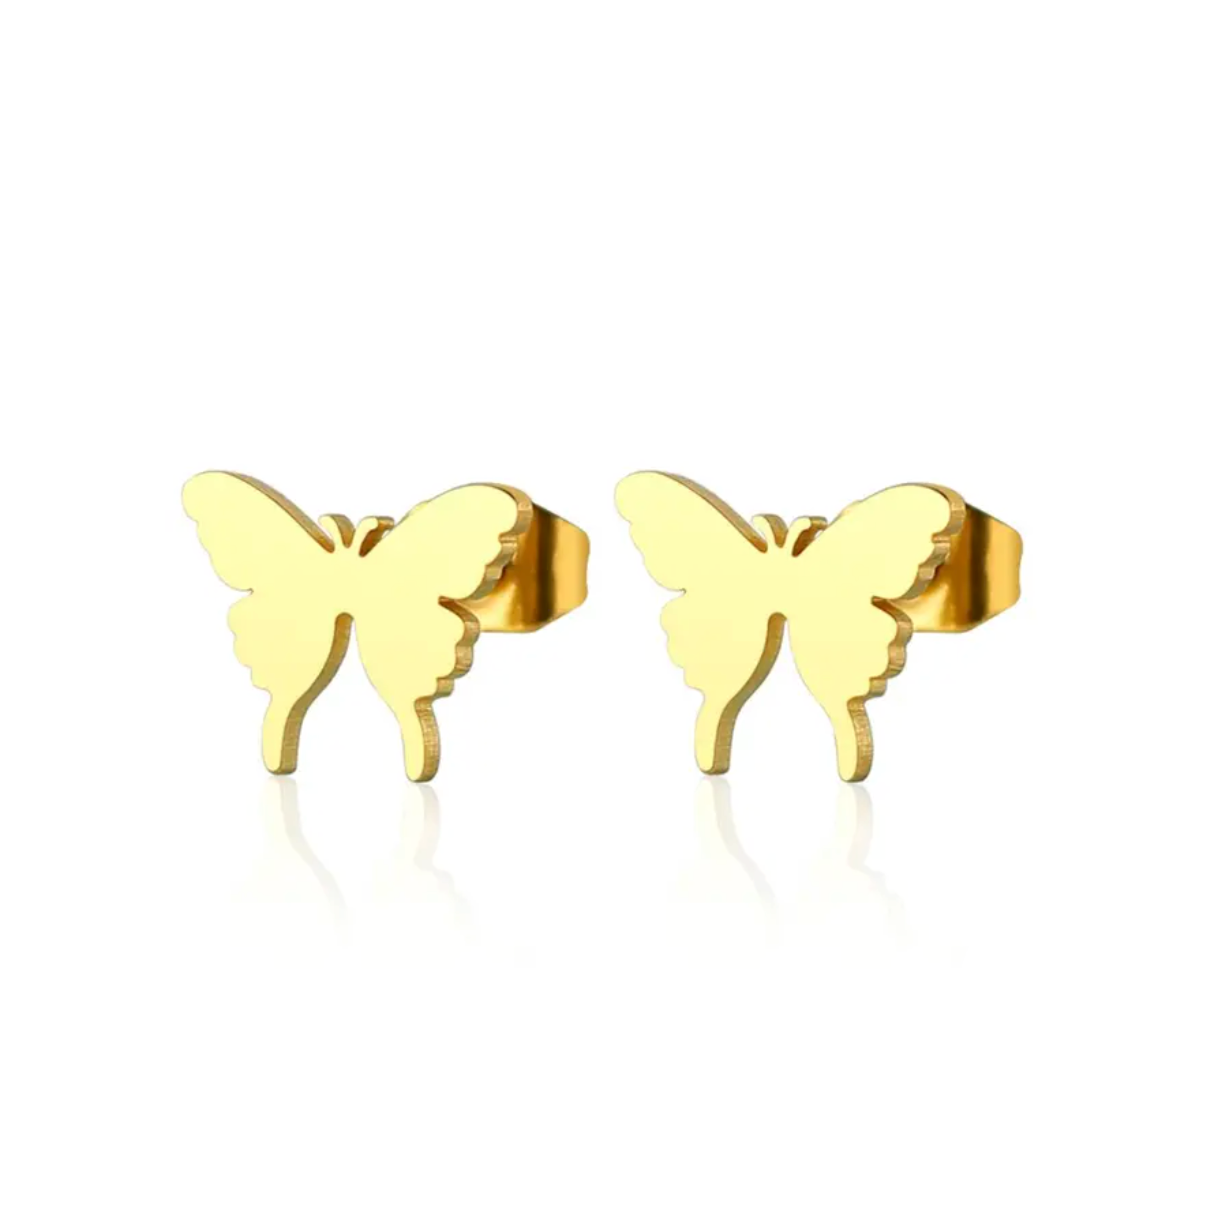 Boucles d'oreilles acier or papillon. Détails produit : Couleur or. Acier inoxydable. Taille 10 mm x 8 mm. Version couleur argent